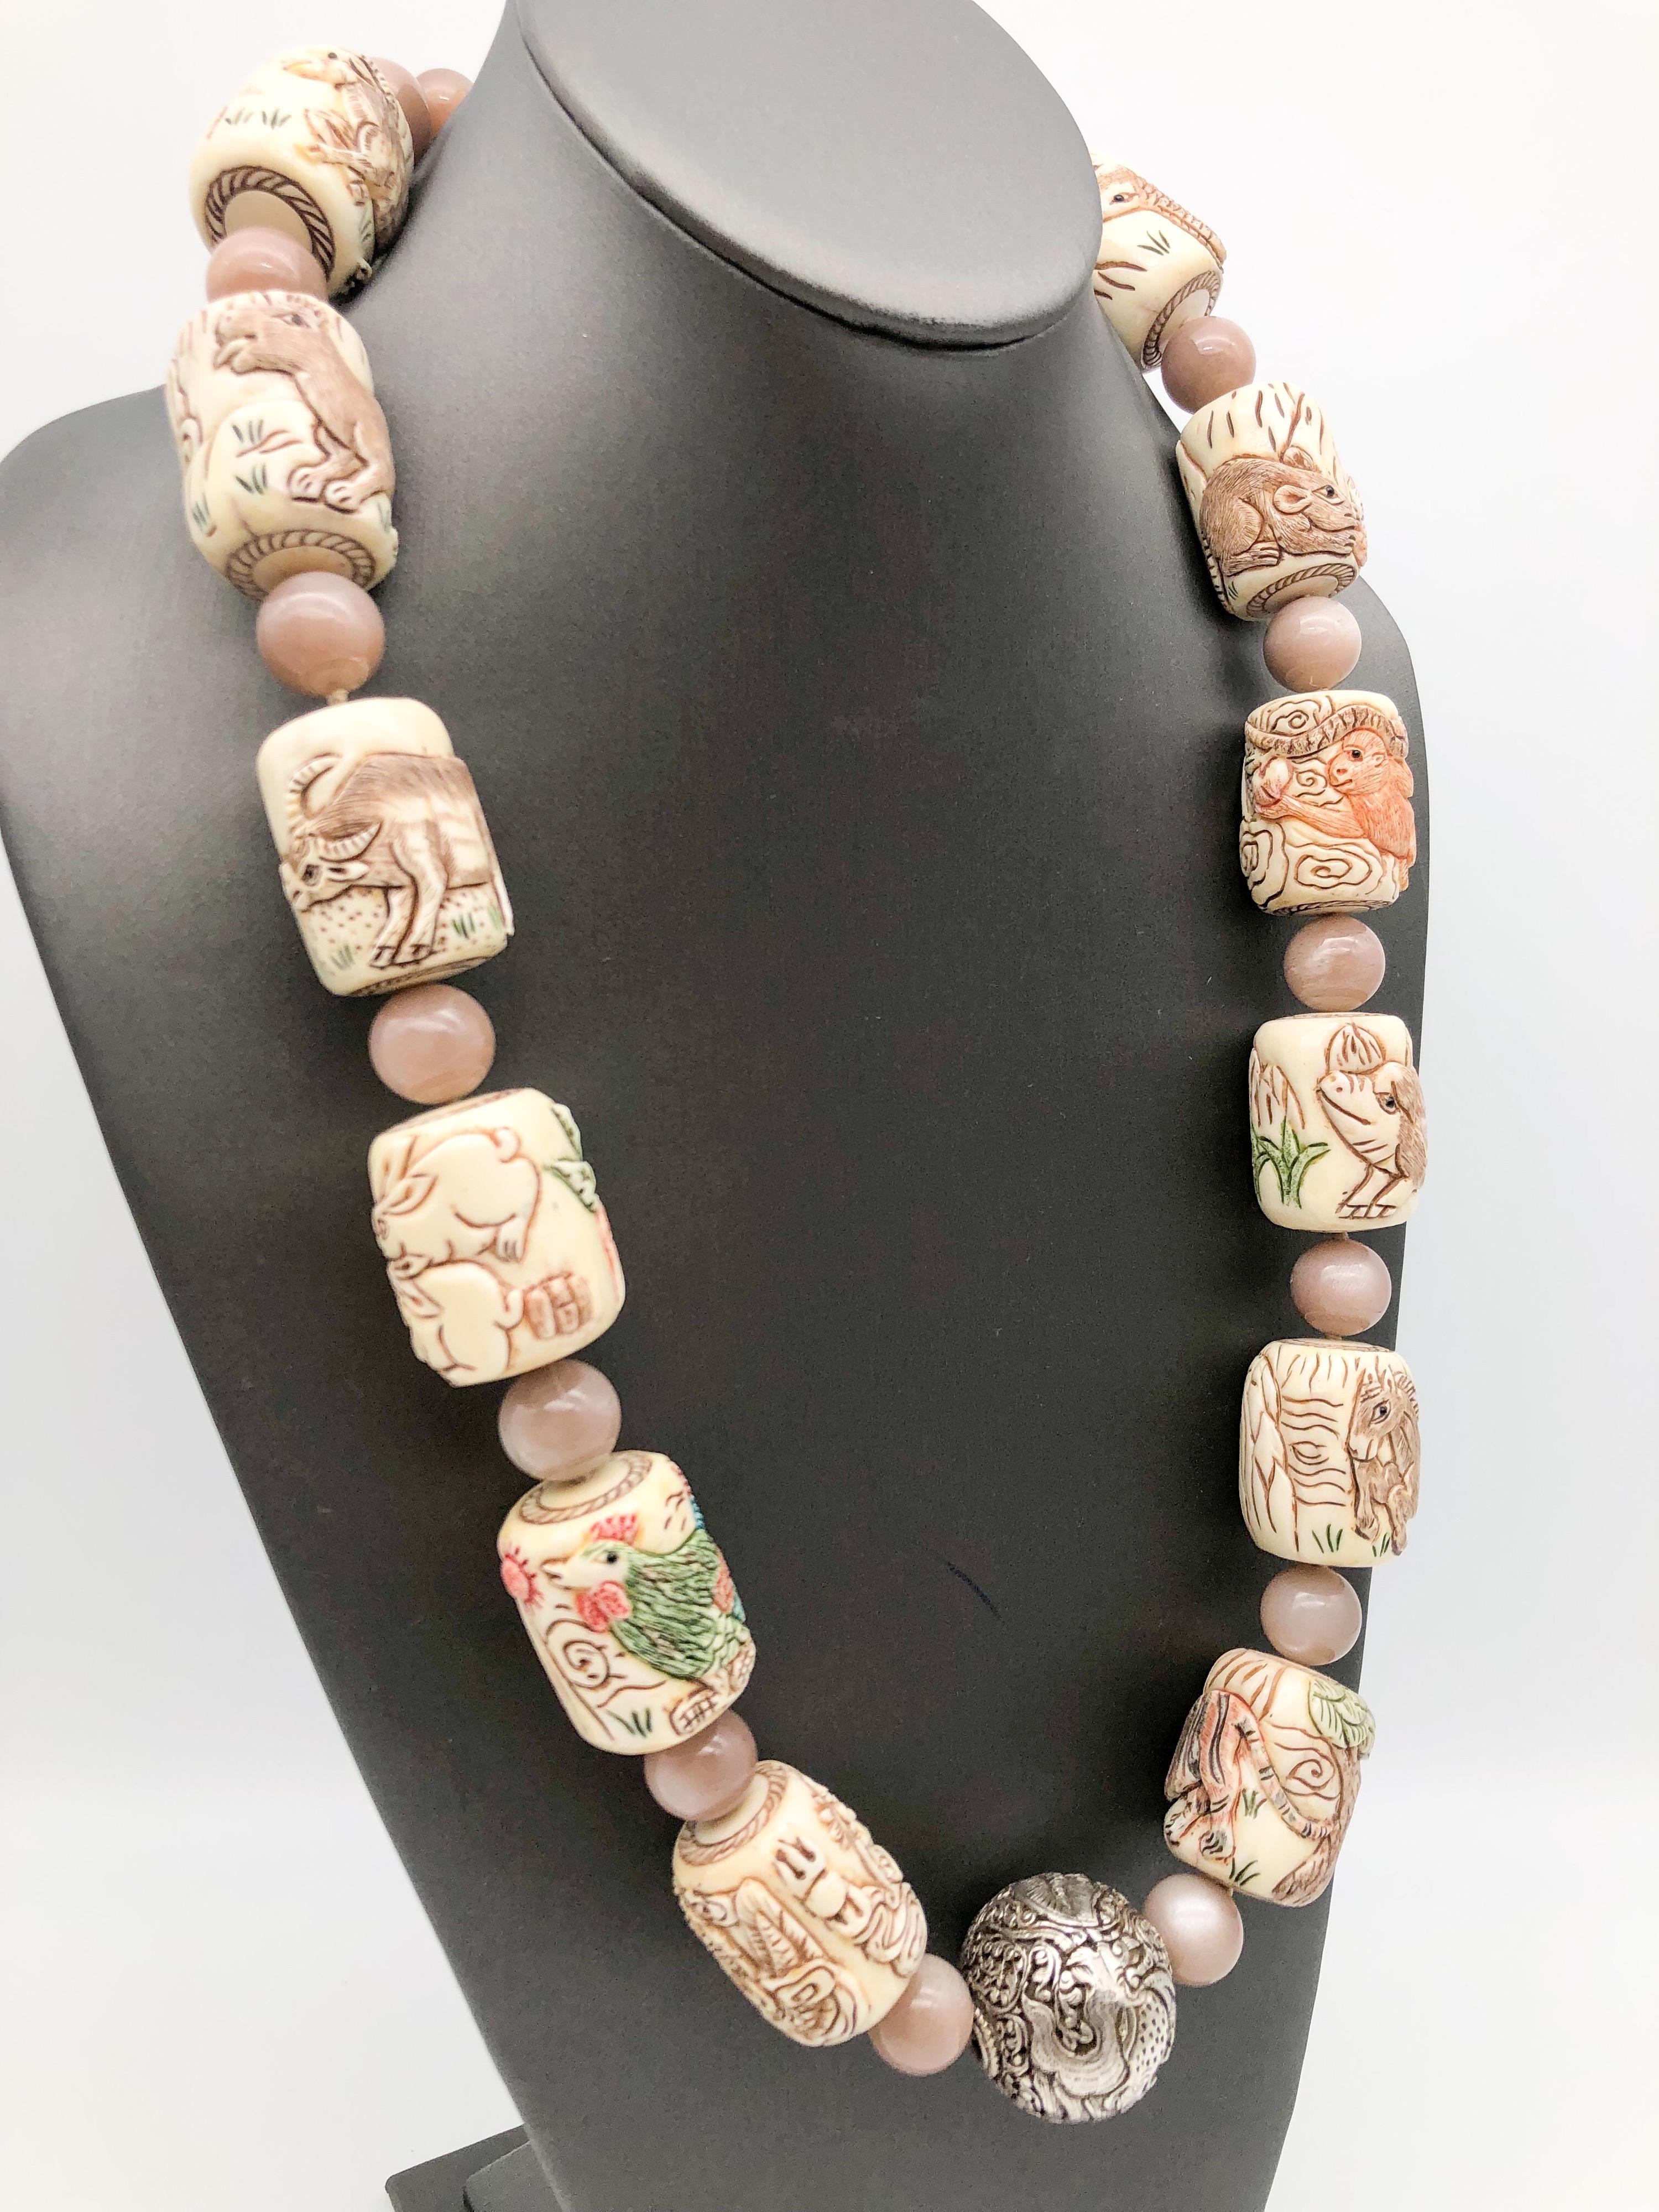 Unique en son genre
Il s'agit d'un collier vintage en os sculpté représentant le zodiaque chinois. Peint à la main 12 mois de différents animaux pour chaque mois, le zodiaque sont espacés avec 12-14mm Moonstone perles. Pendentif 